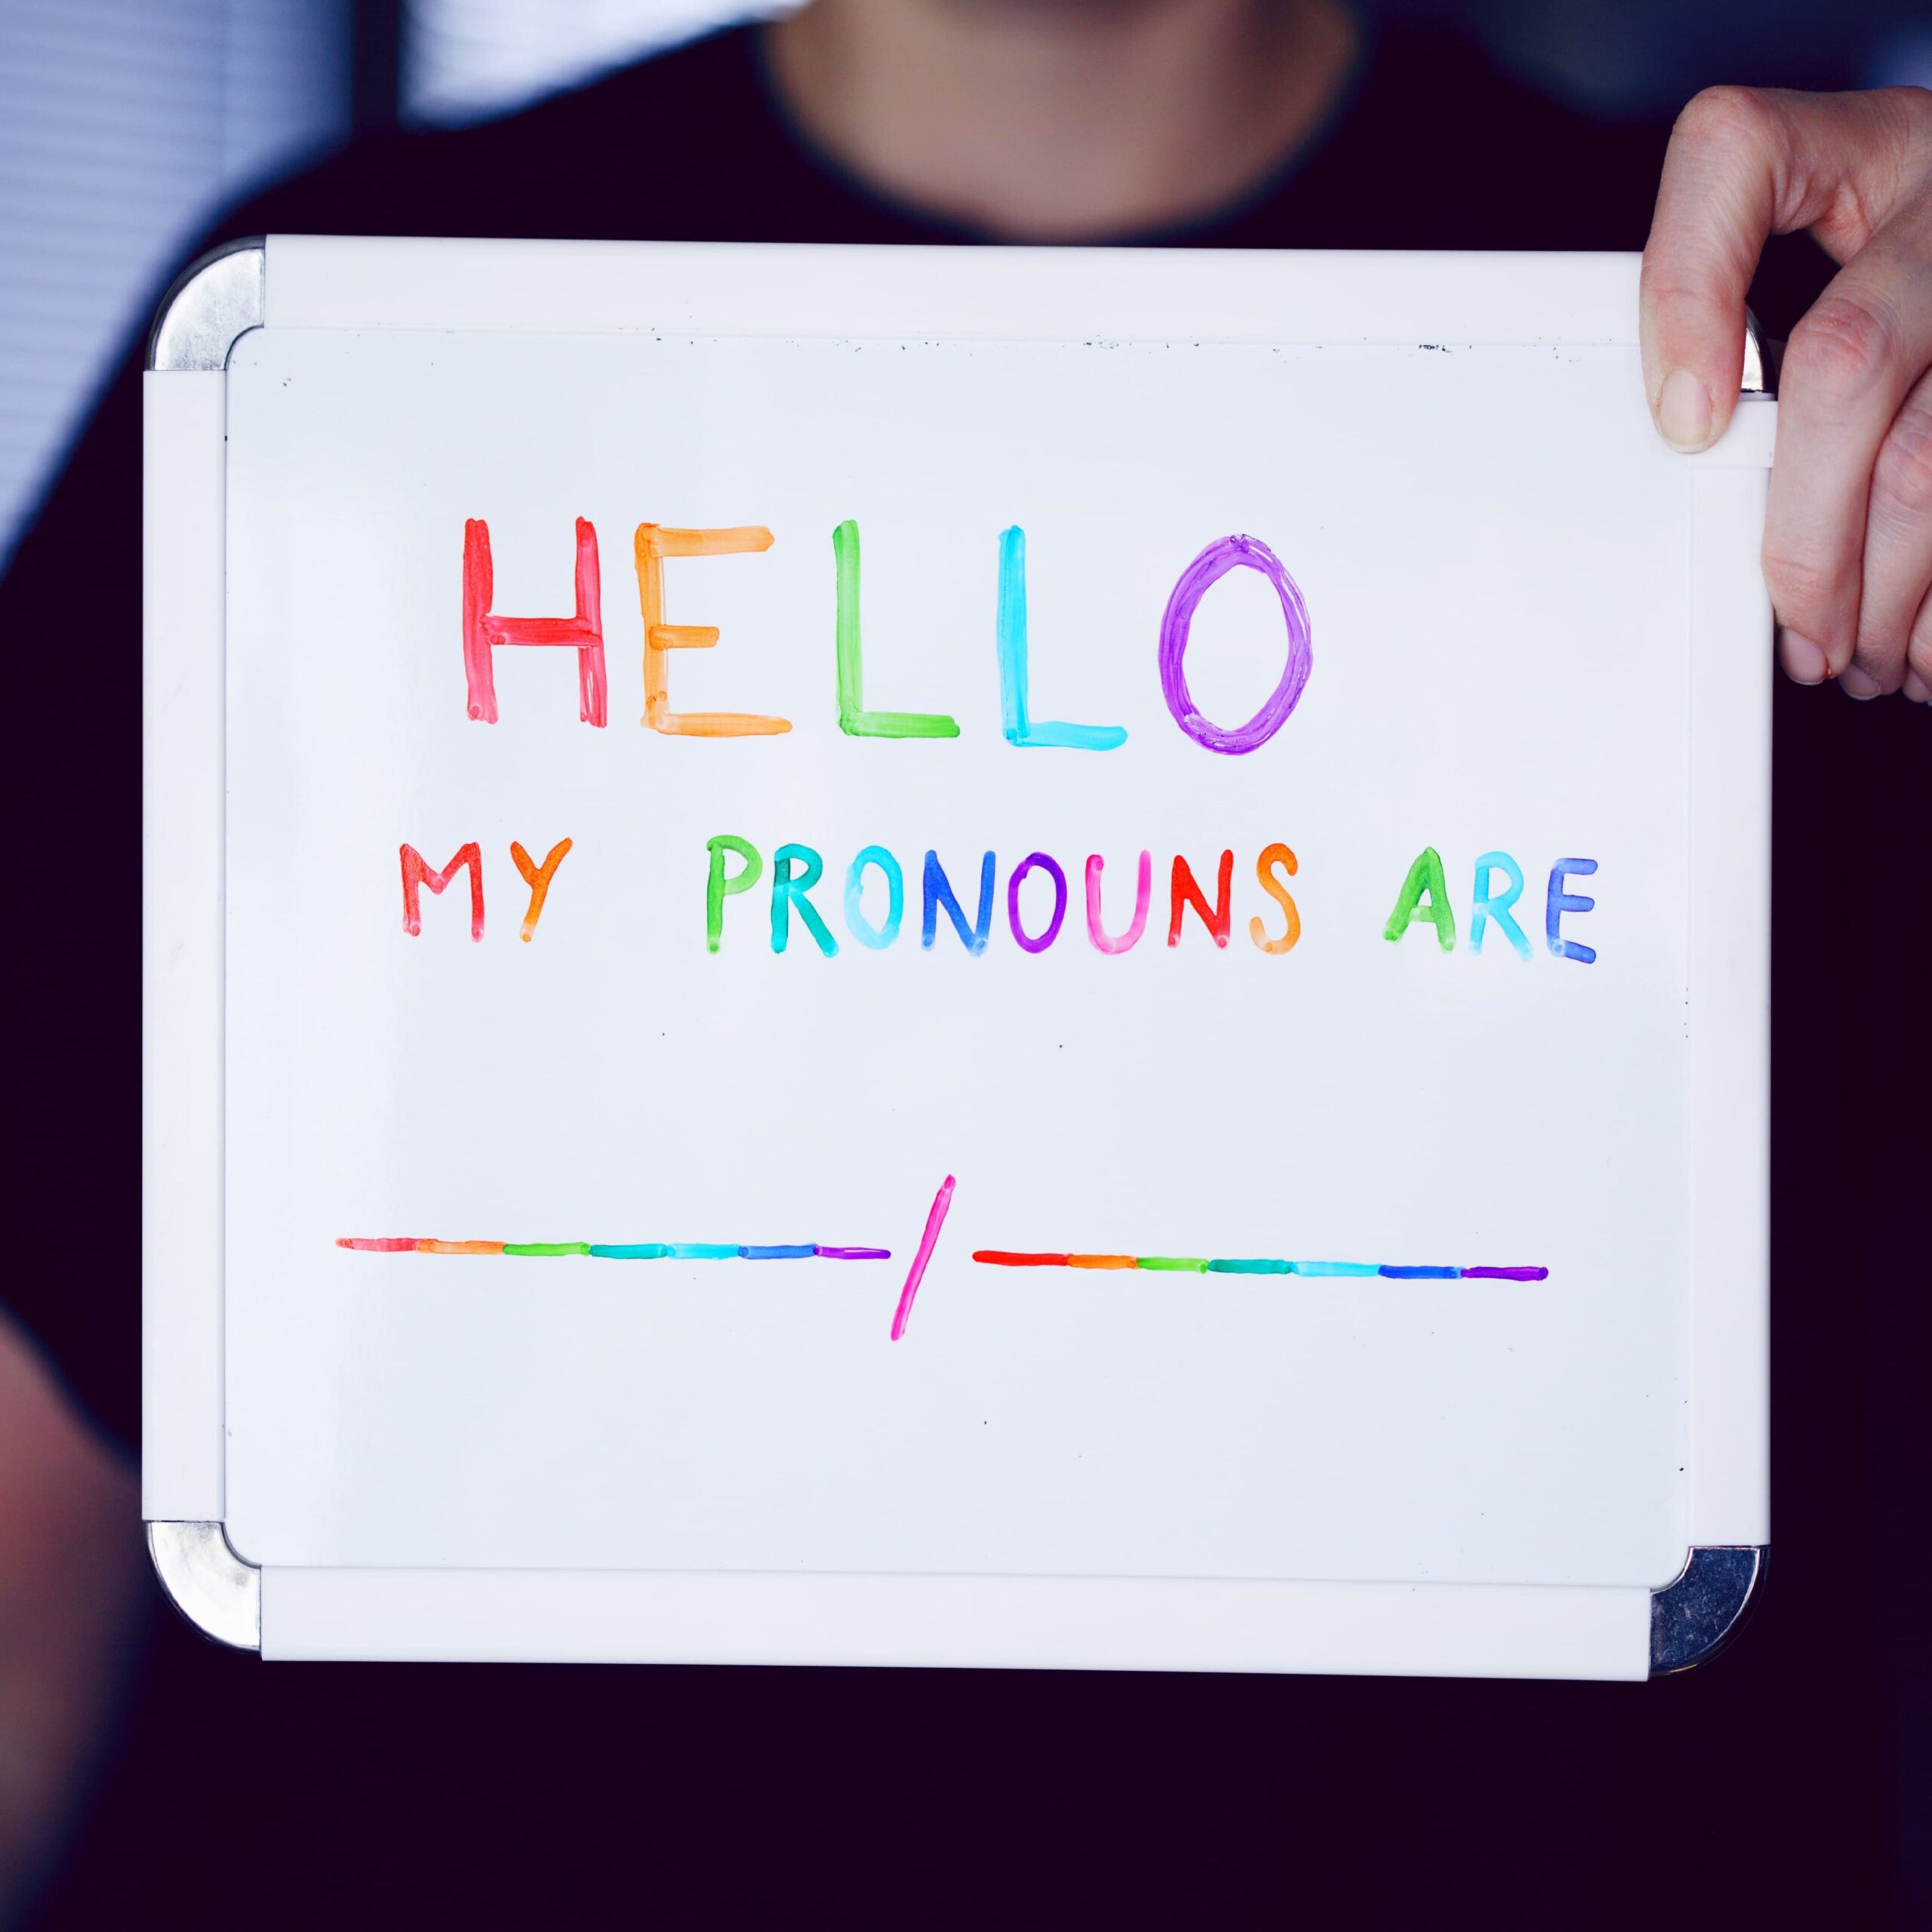 My pronouns are...